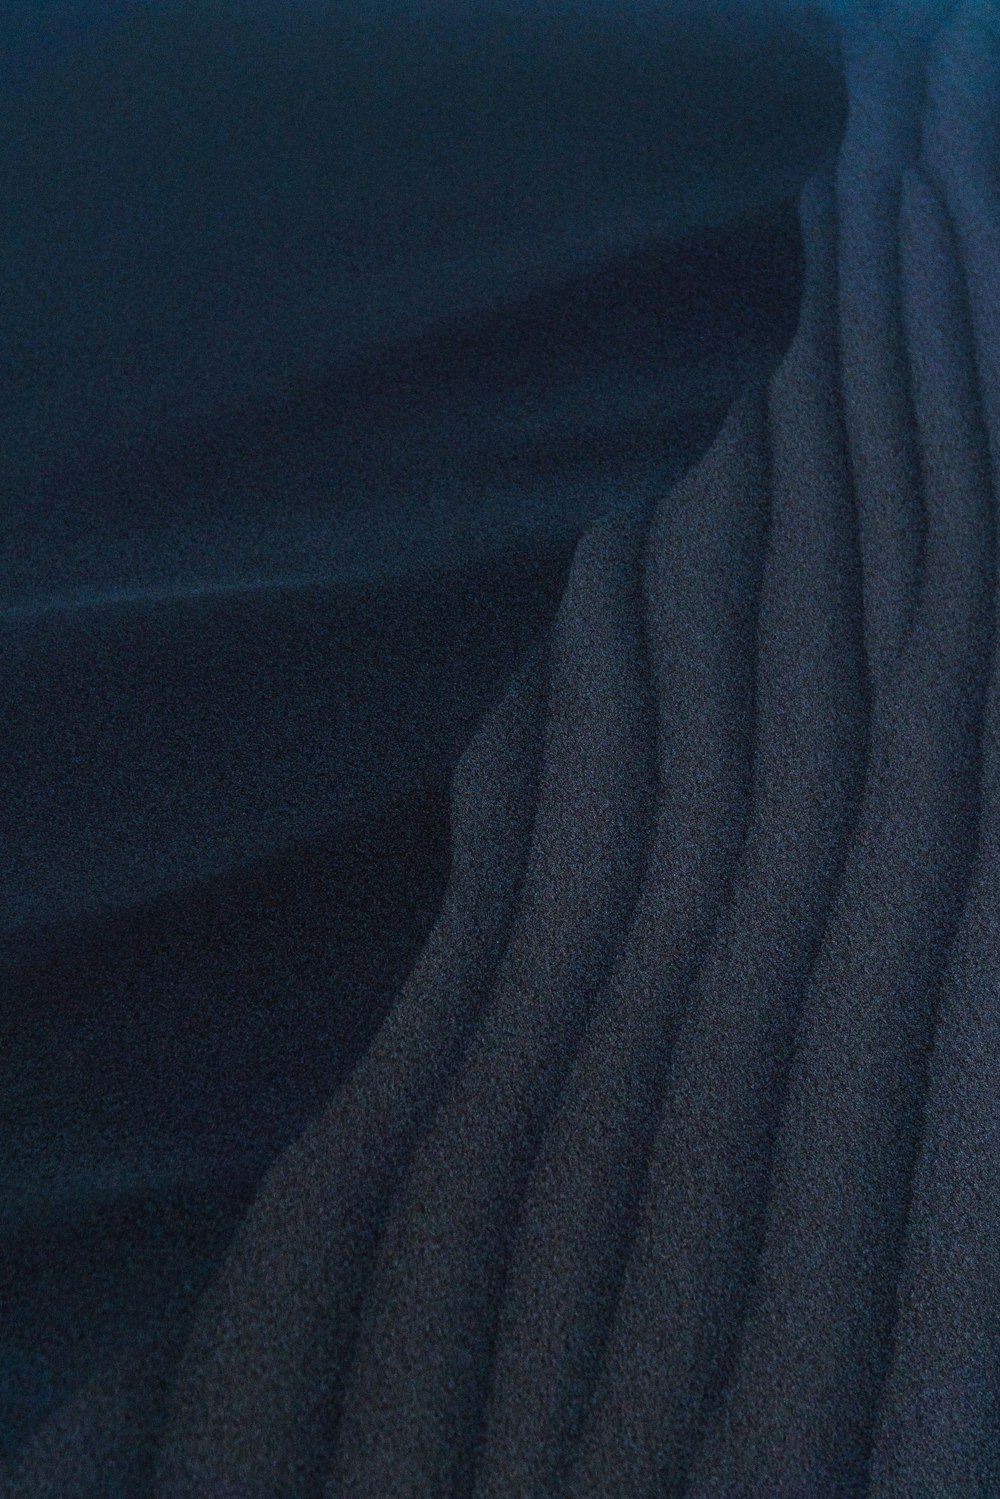 têxtil azul em imagem de perto